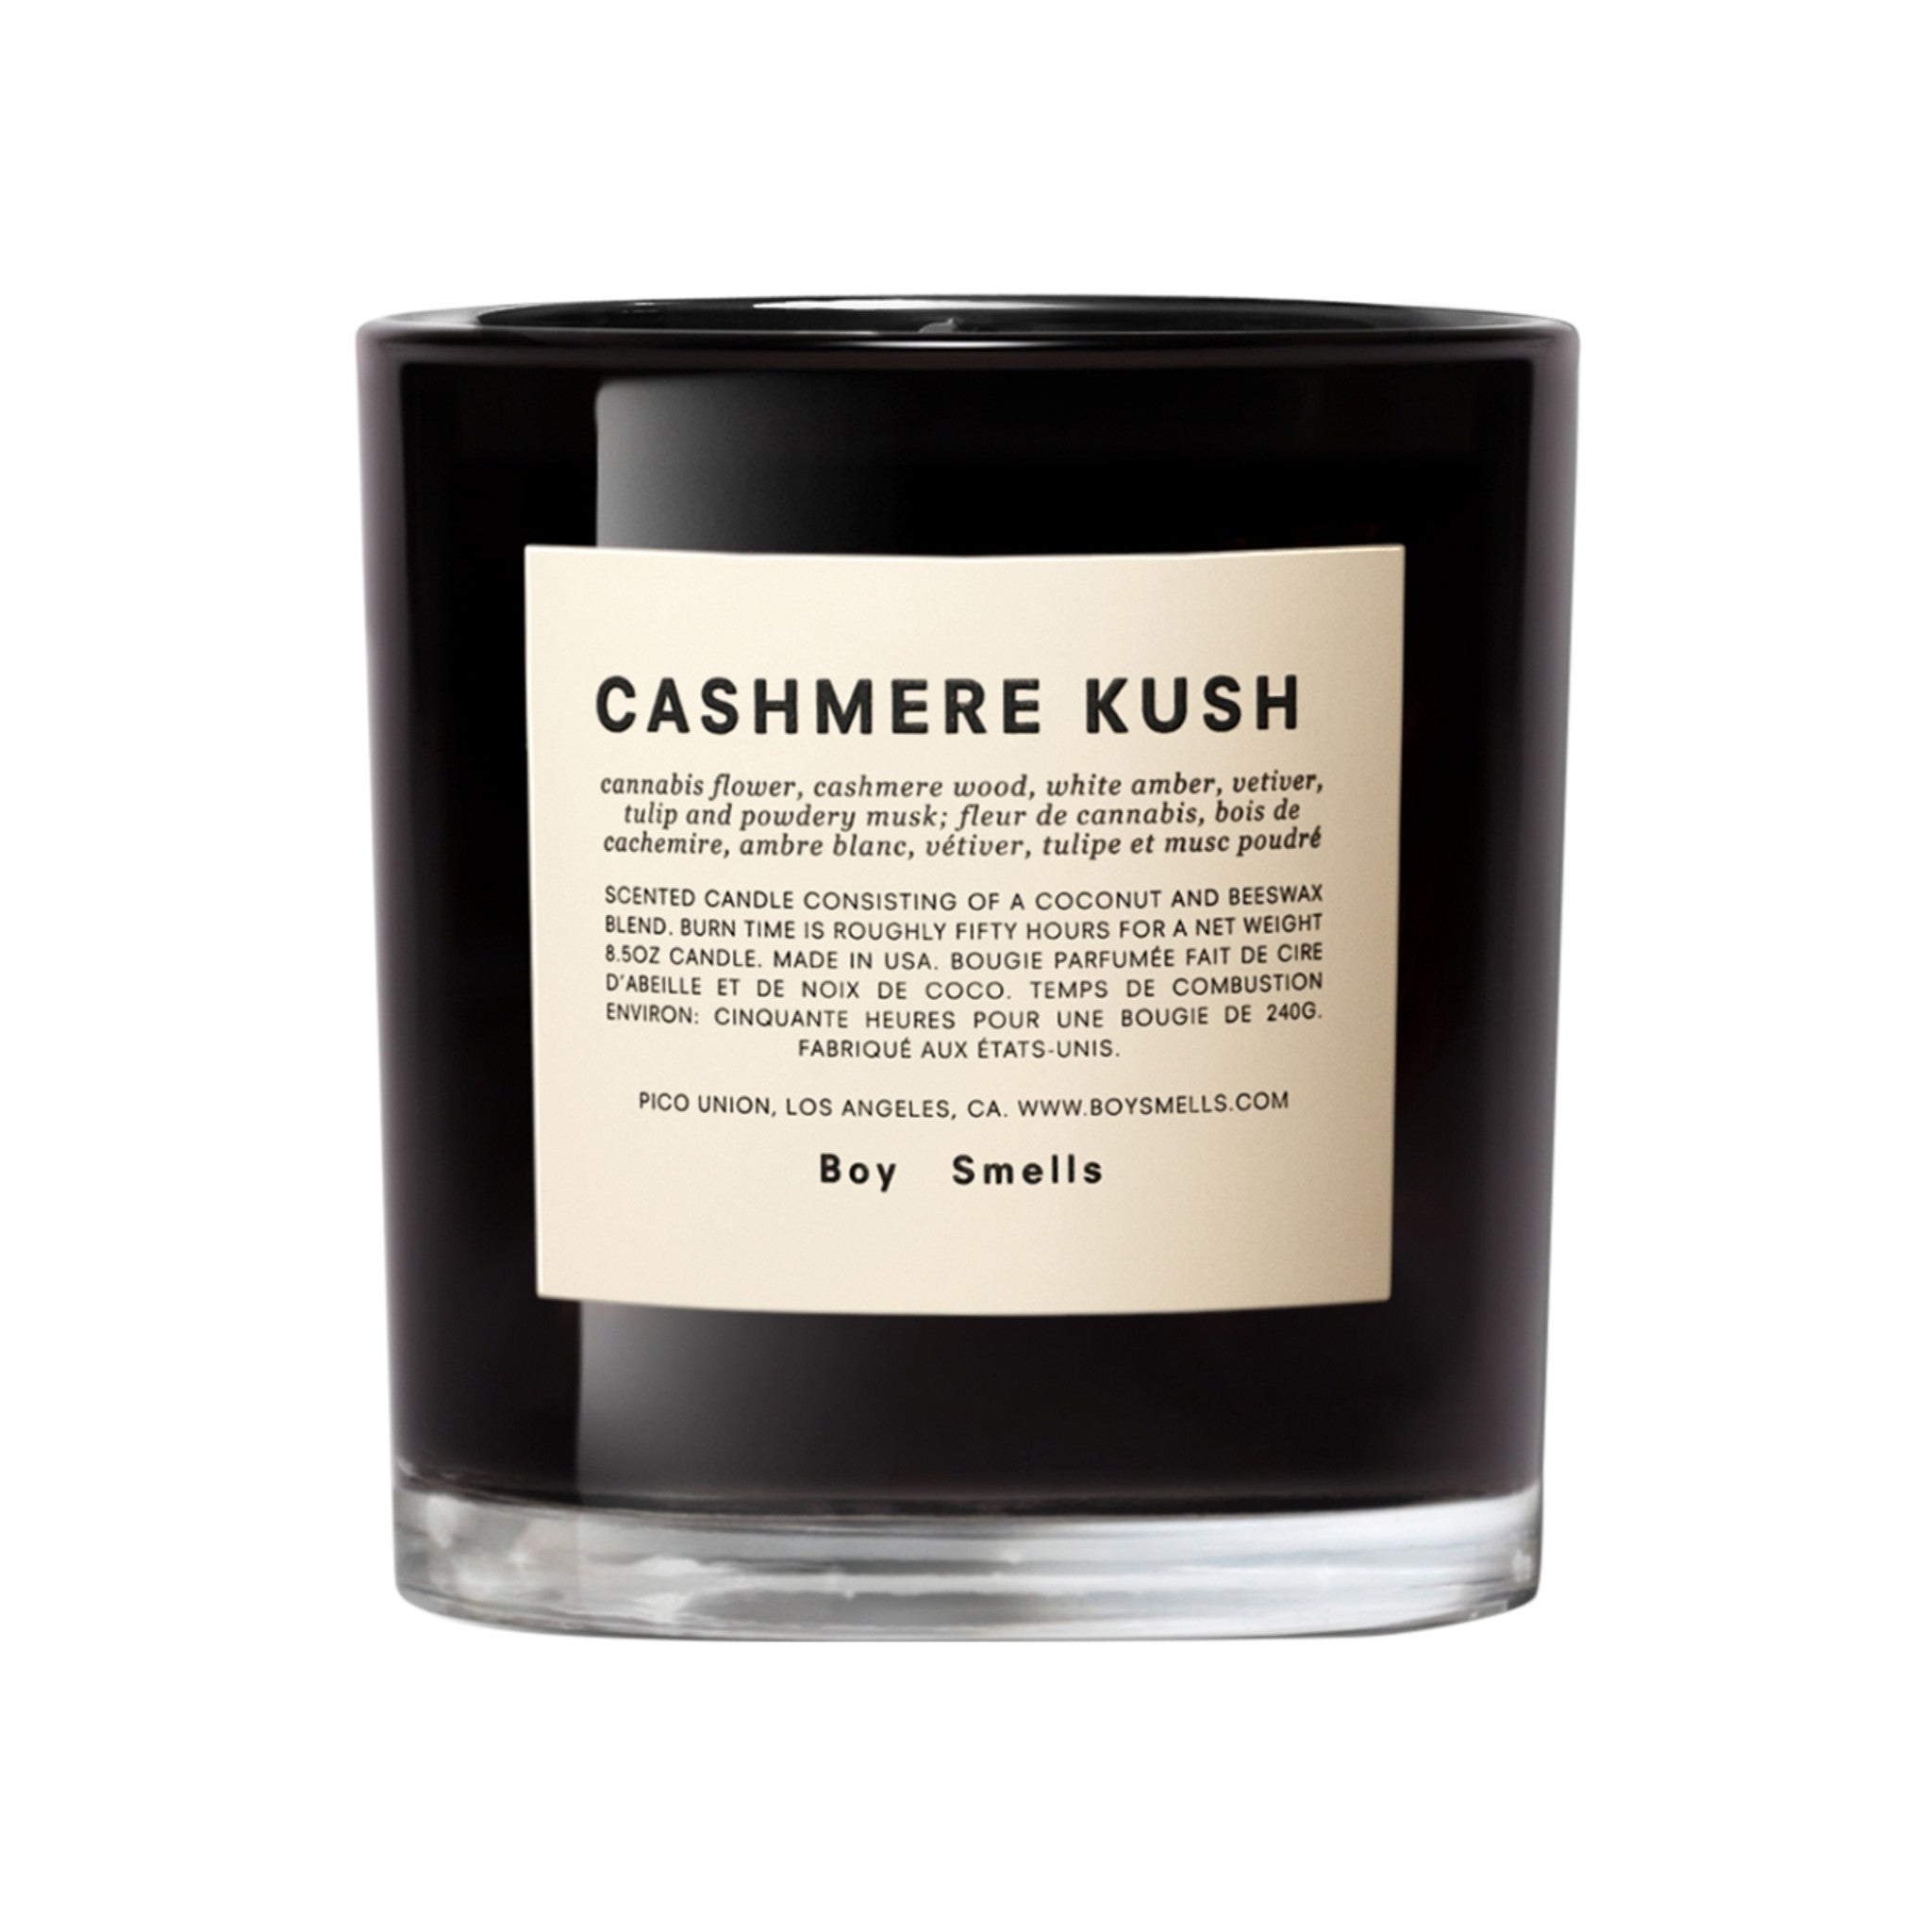 Boy Smells Cashmere Kush Candle main image.